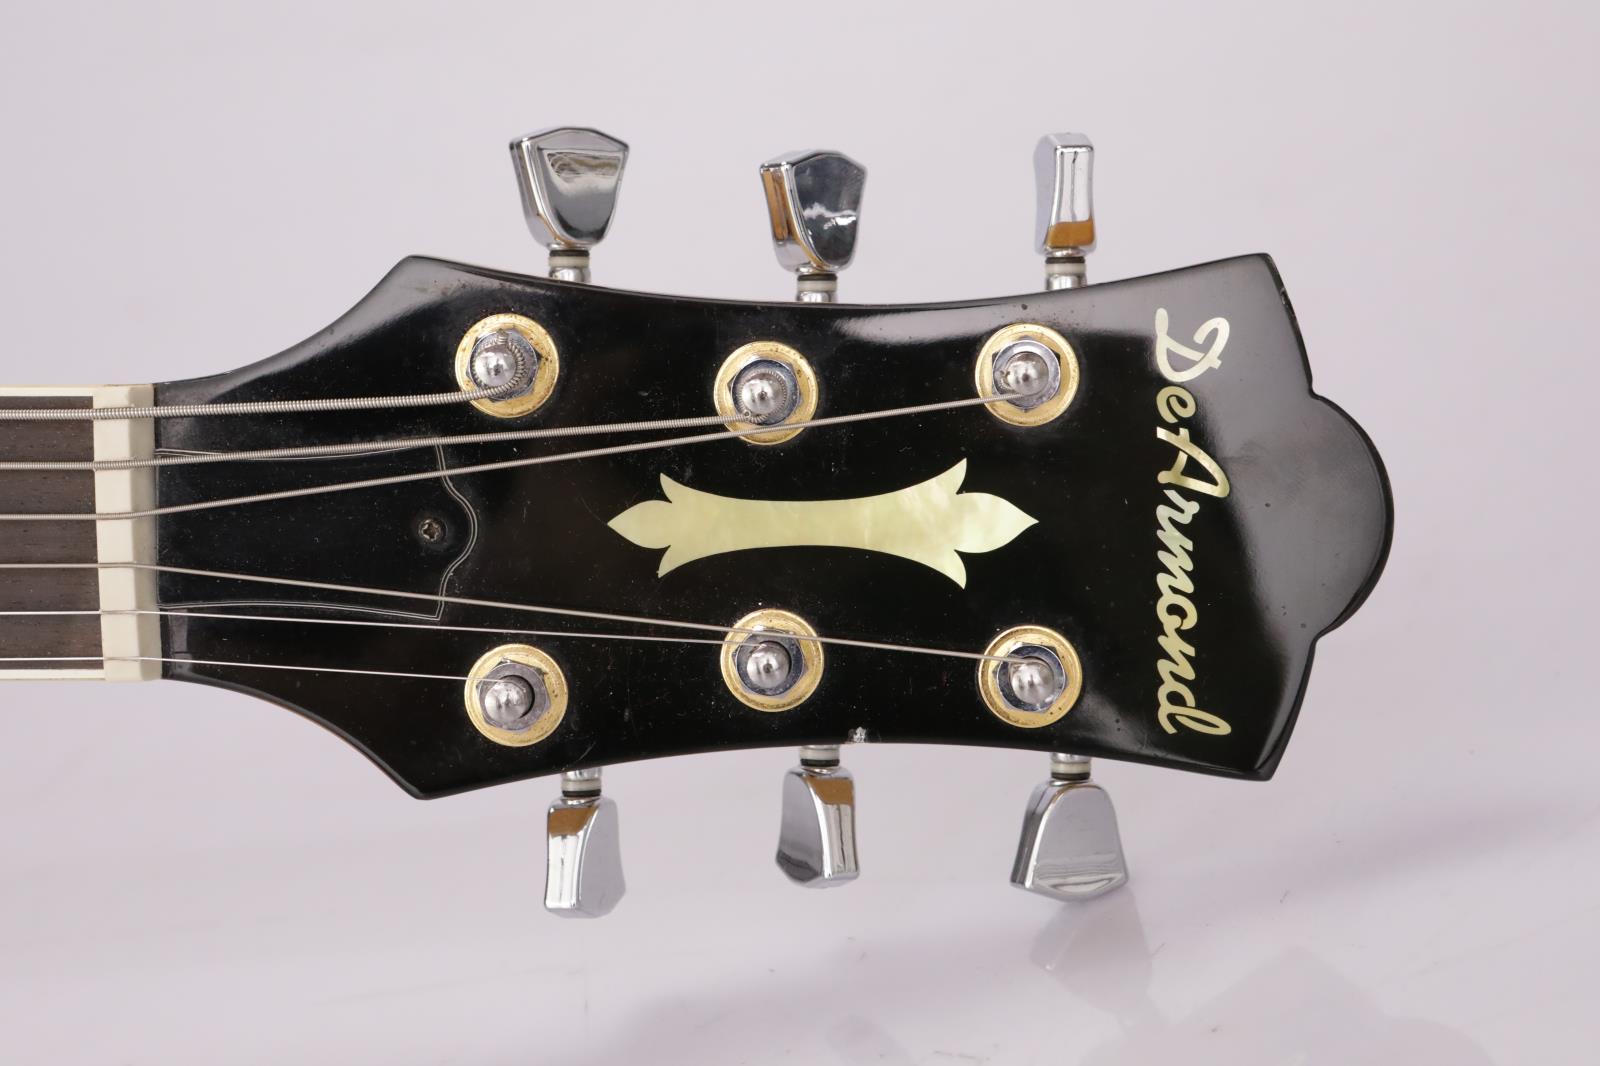 favilla guitars serial numbers